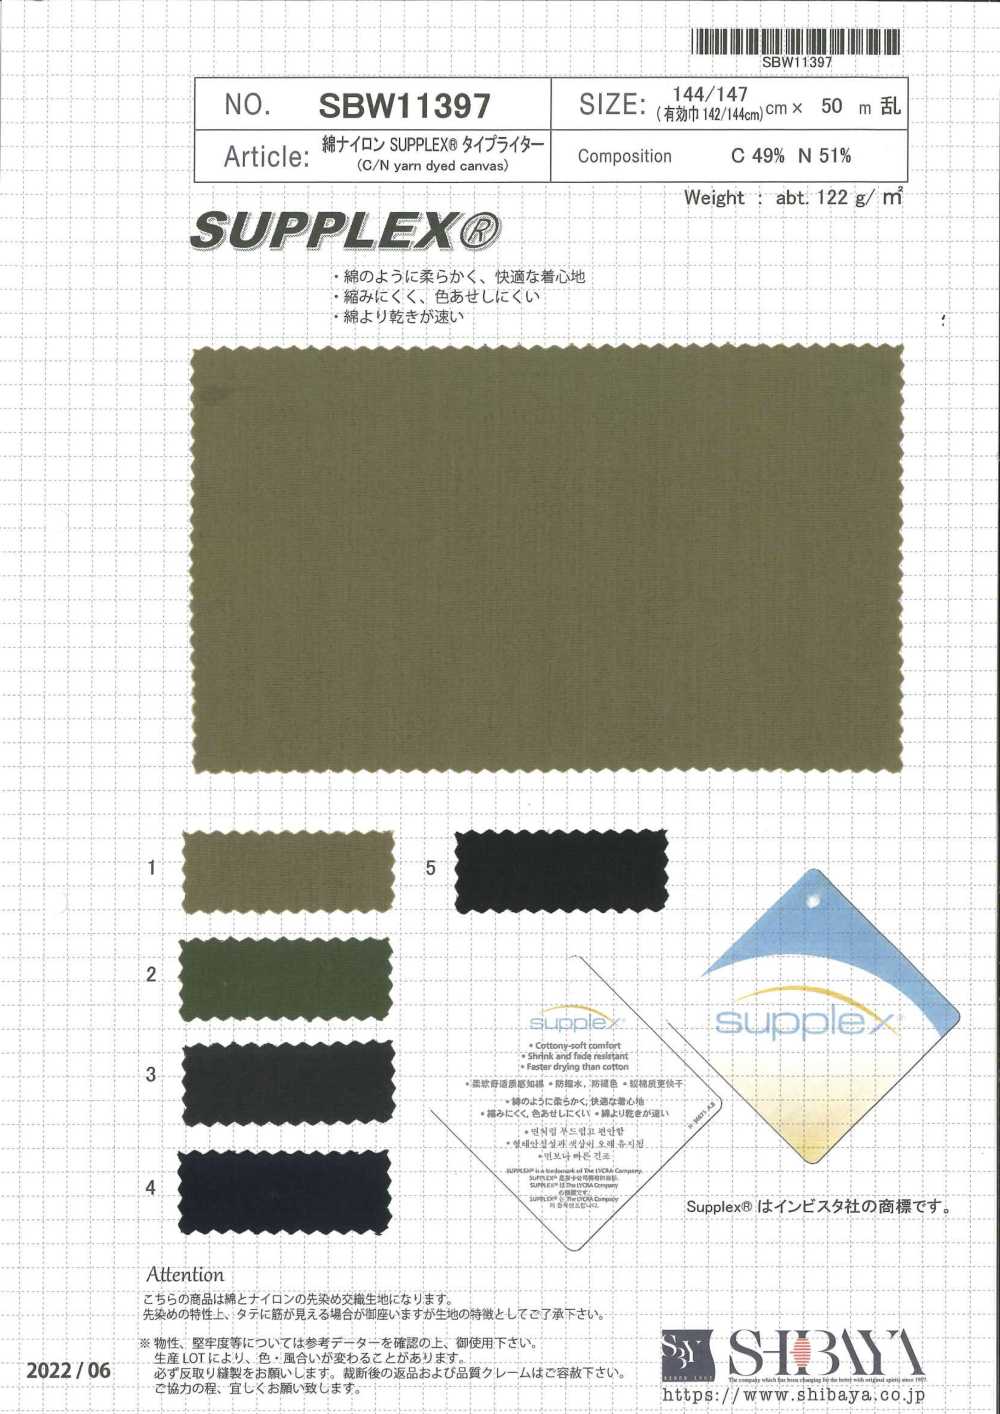 SBW11397 Baumwoll-Nylon-SUPLLEX®-Schreibmaschinentuch[Textilgewebe] SHIBAYA